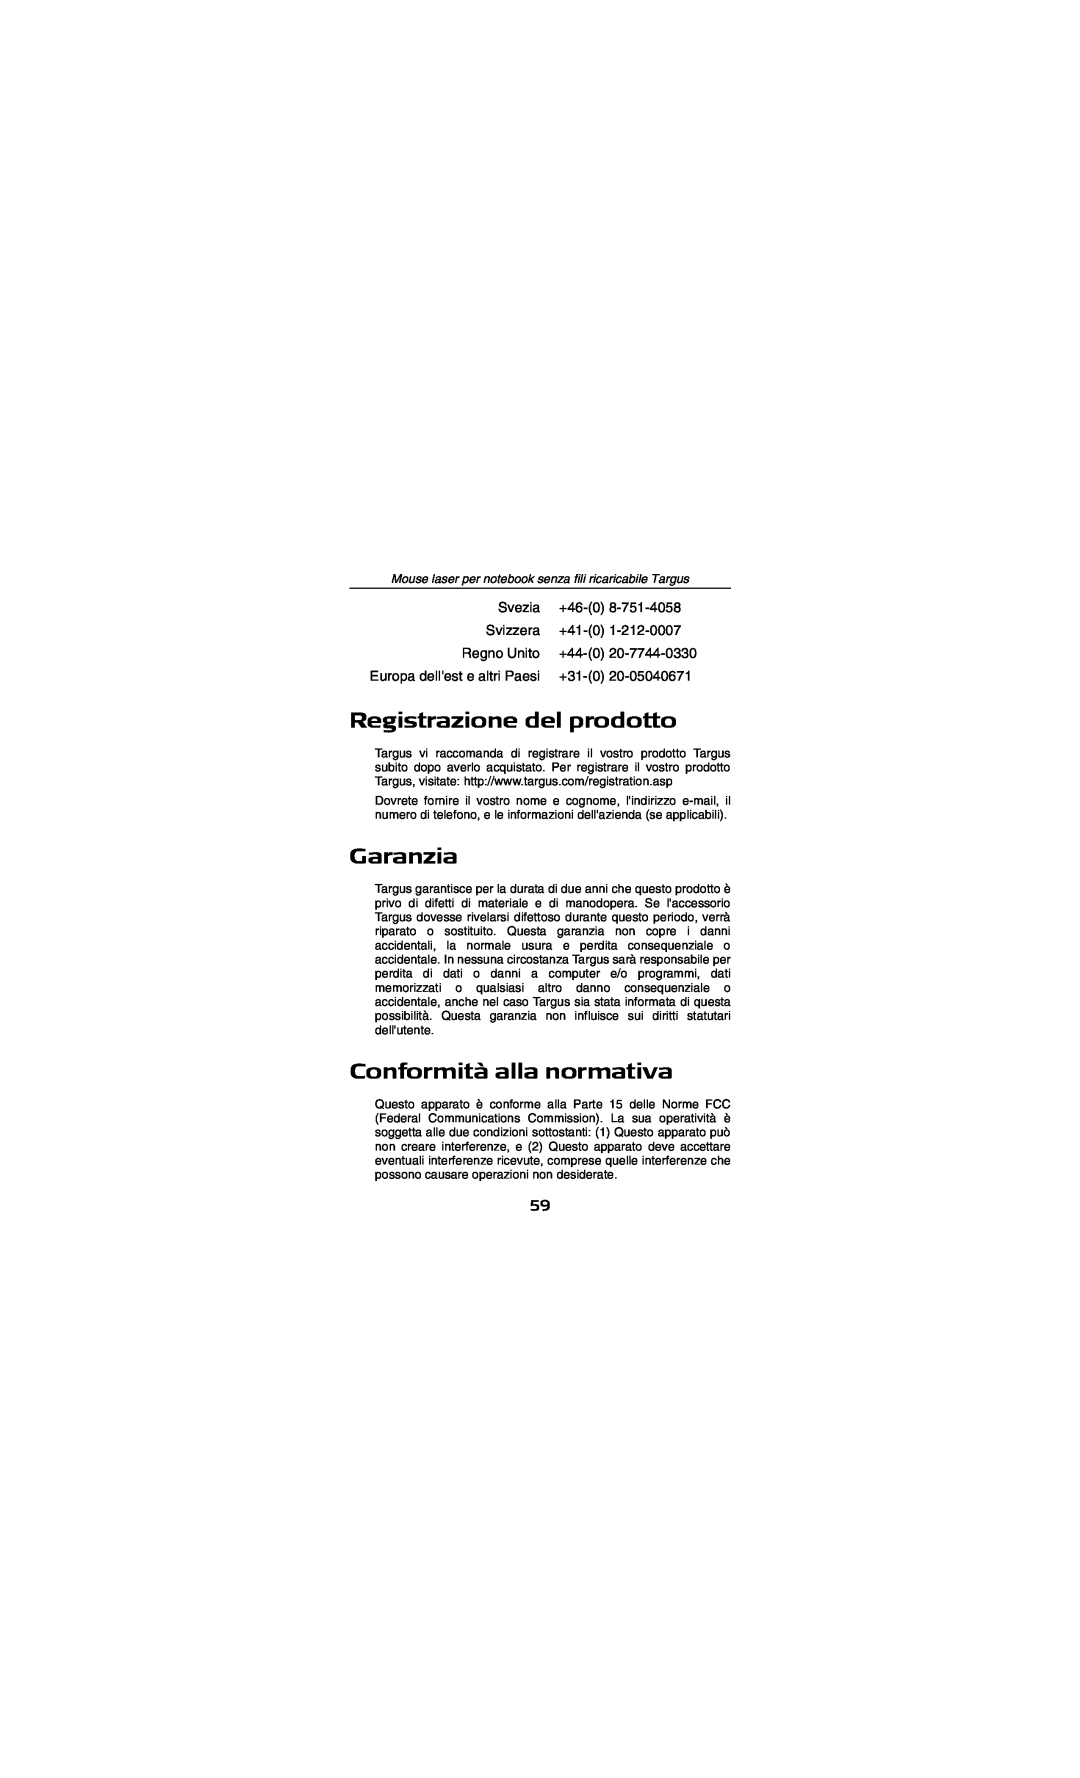 Targus AMW15EU specifications Registrazione del prodotto, Garanzia, Conformità alla normativa 